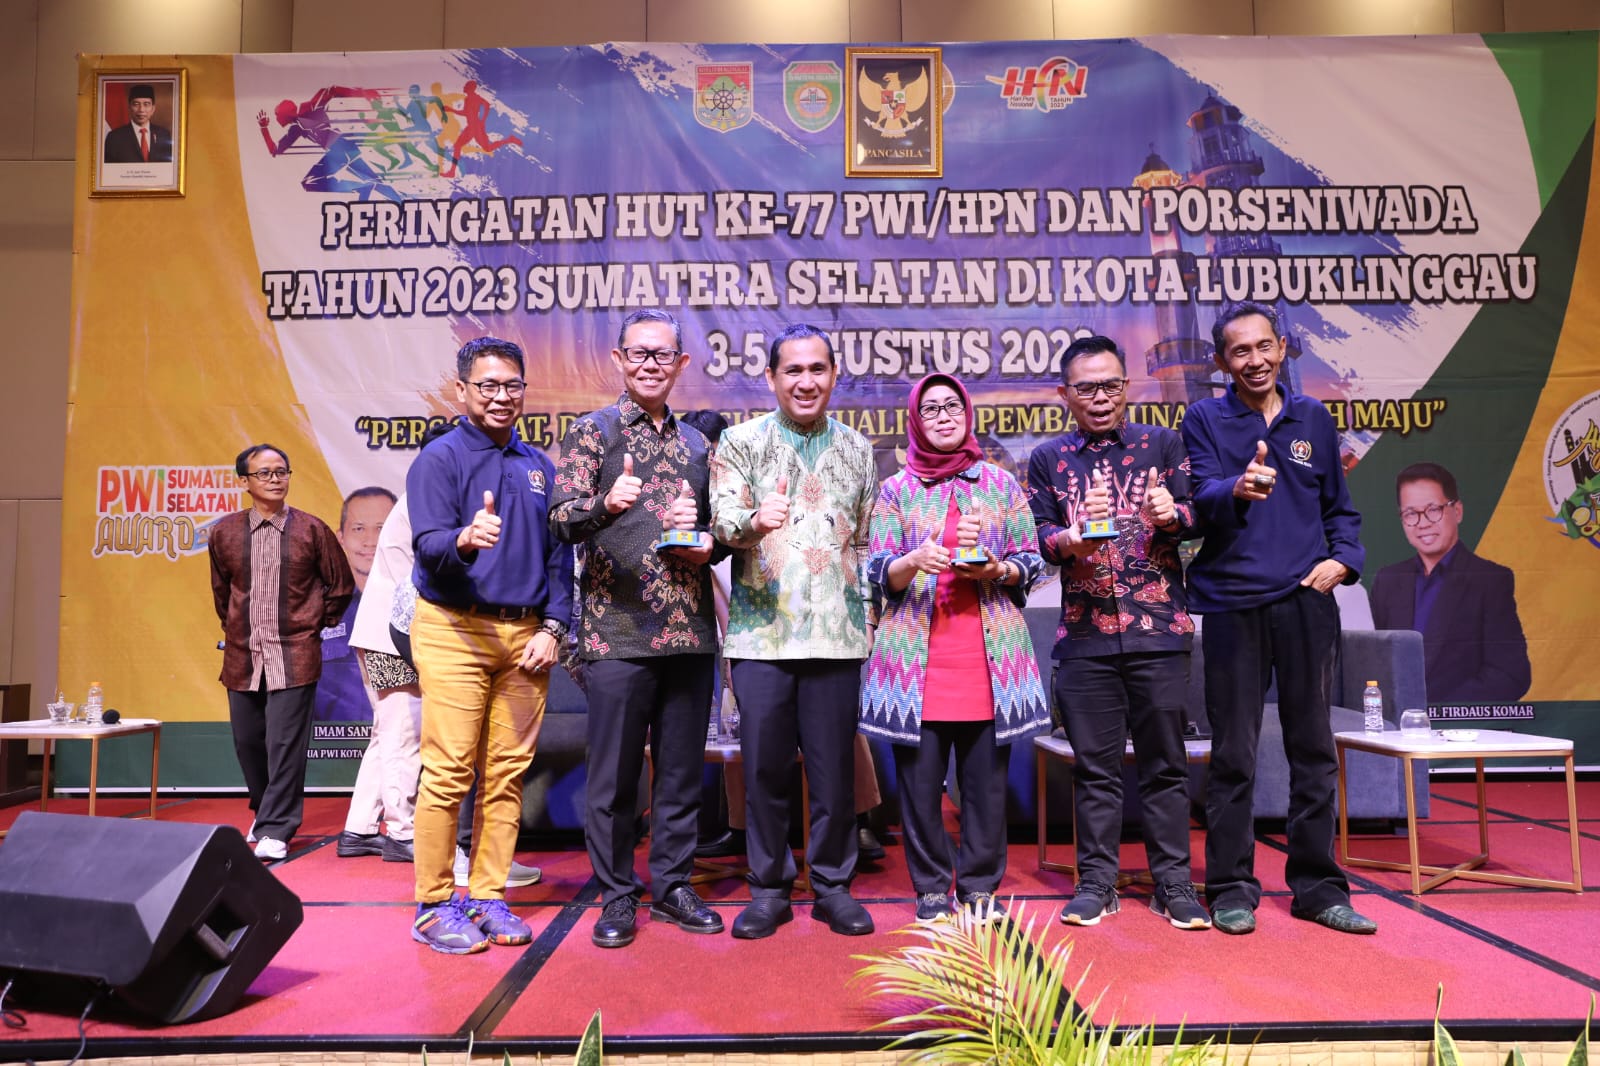 Sekdaprov Fahrizal Jadi Narasumber Peringatan HUT ke-77 PWI/HPN dan Porseniwada 2023 di Sumatera Selatan, Tekankan Pentingnya UKW dan Wawasan Kebangsaan Para Wartawan